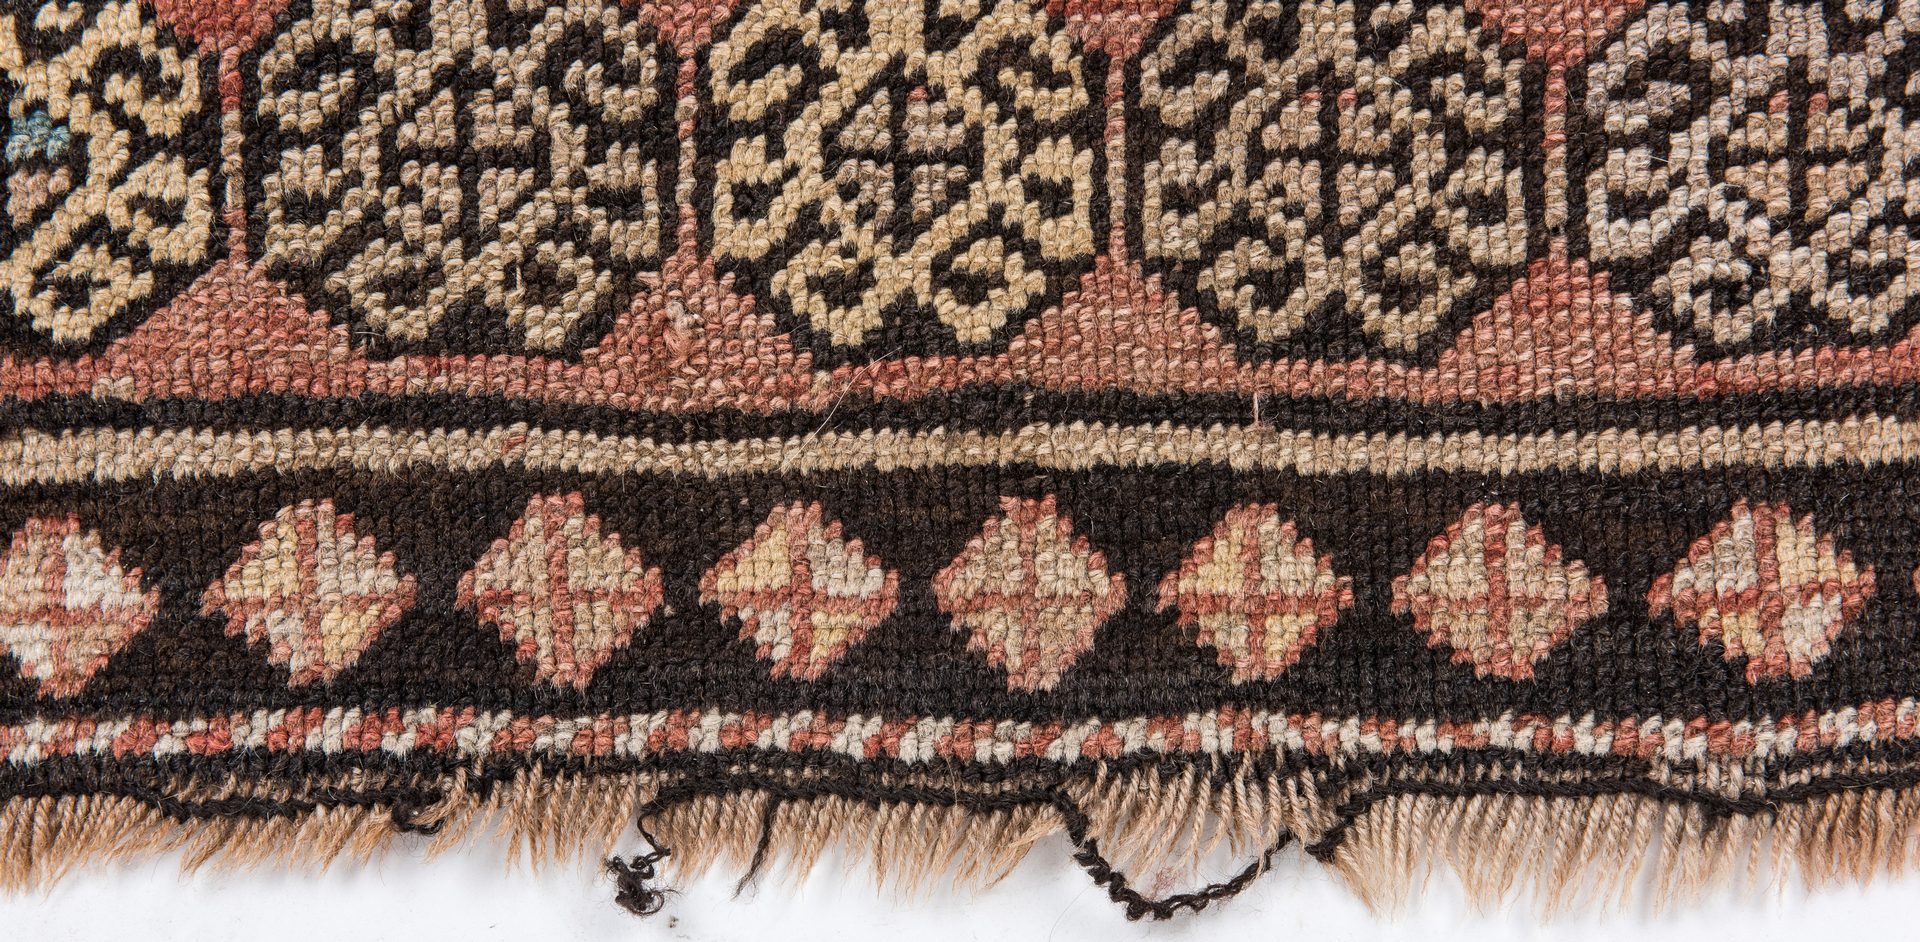 Lot 324: Antique Lenkoran Caucasian Rug, dated